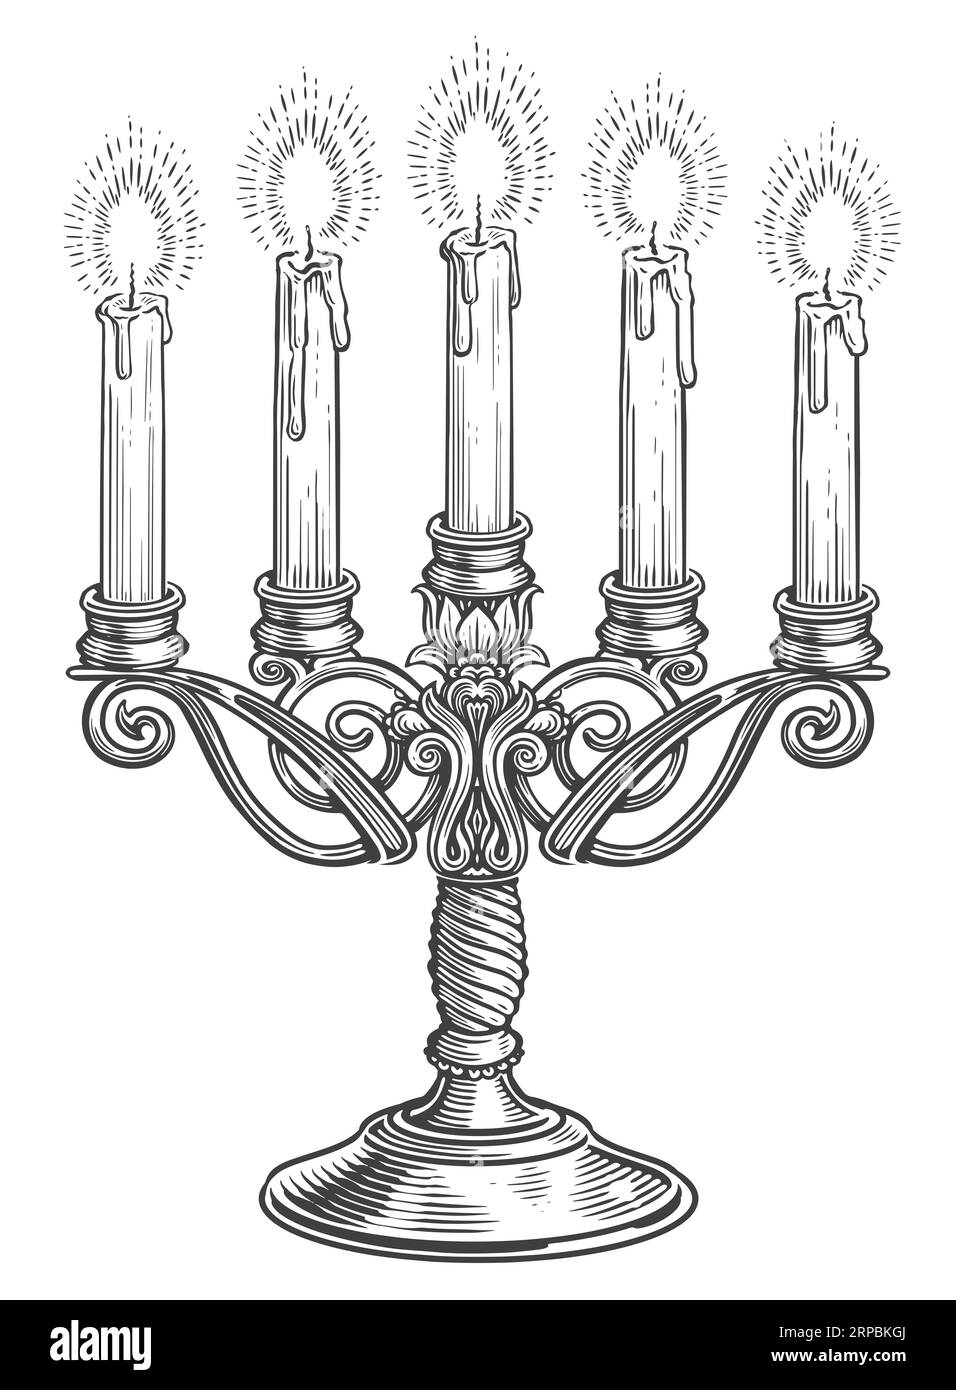 Vintage-Kandelaber mit fünf brennenden Kerzen im Gravurstil. Handgezeichnete Skizzenzeichnung für Kerzenleuchter Stockfoto